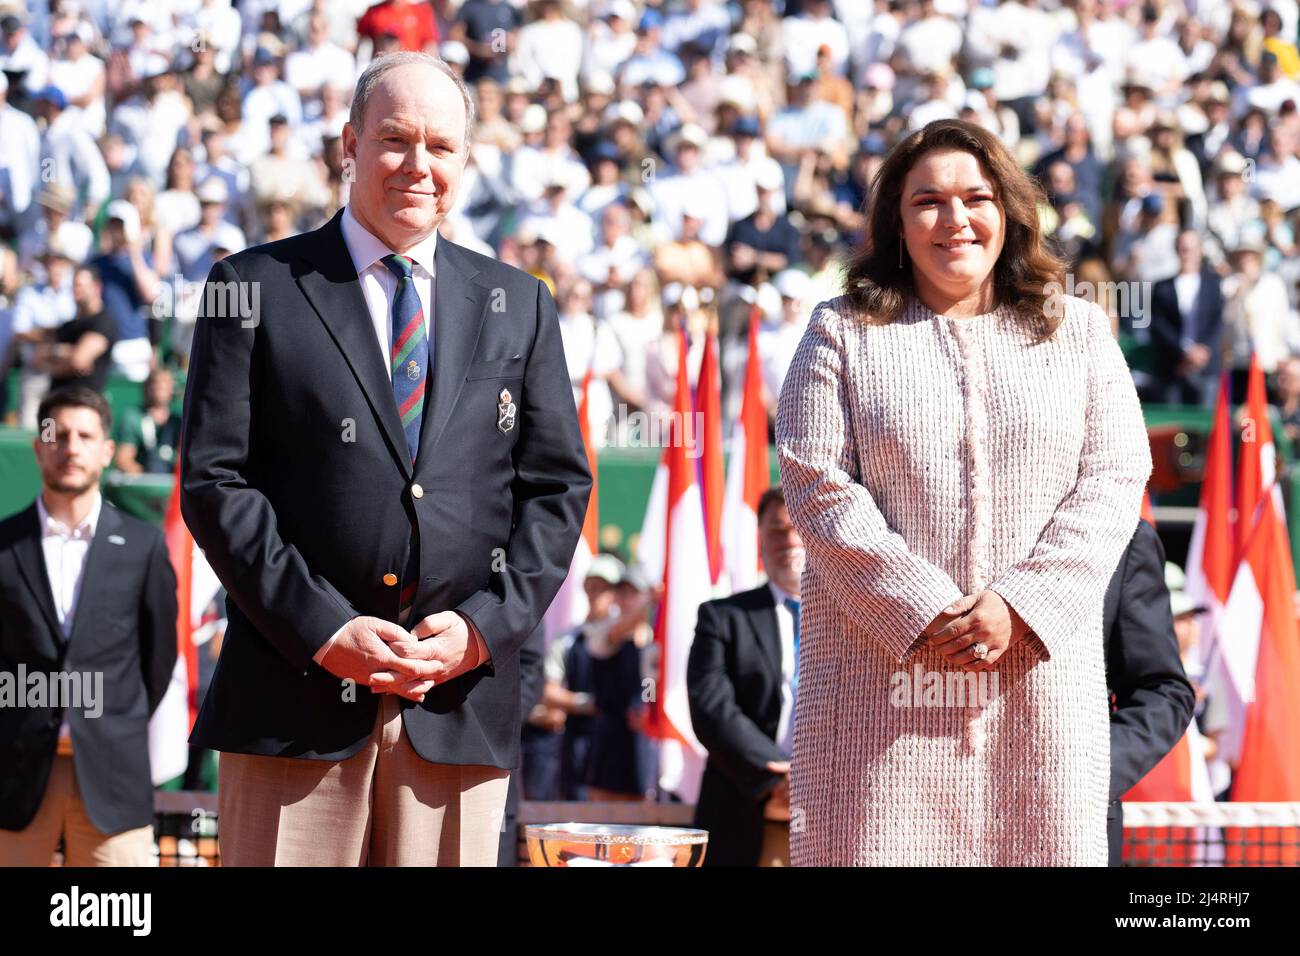 Le Prince Albert II de Monaco et Melanie-Antoinette Costello de Massy,  présidente de la Fédération monégasque de tennis, assistent à la finale des  singles hommes lors du Monaco Rolex Masters à Monte